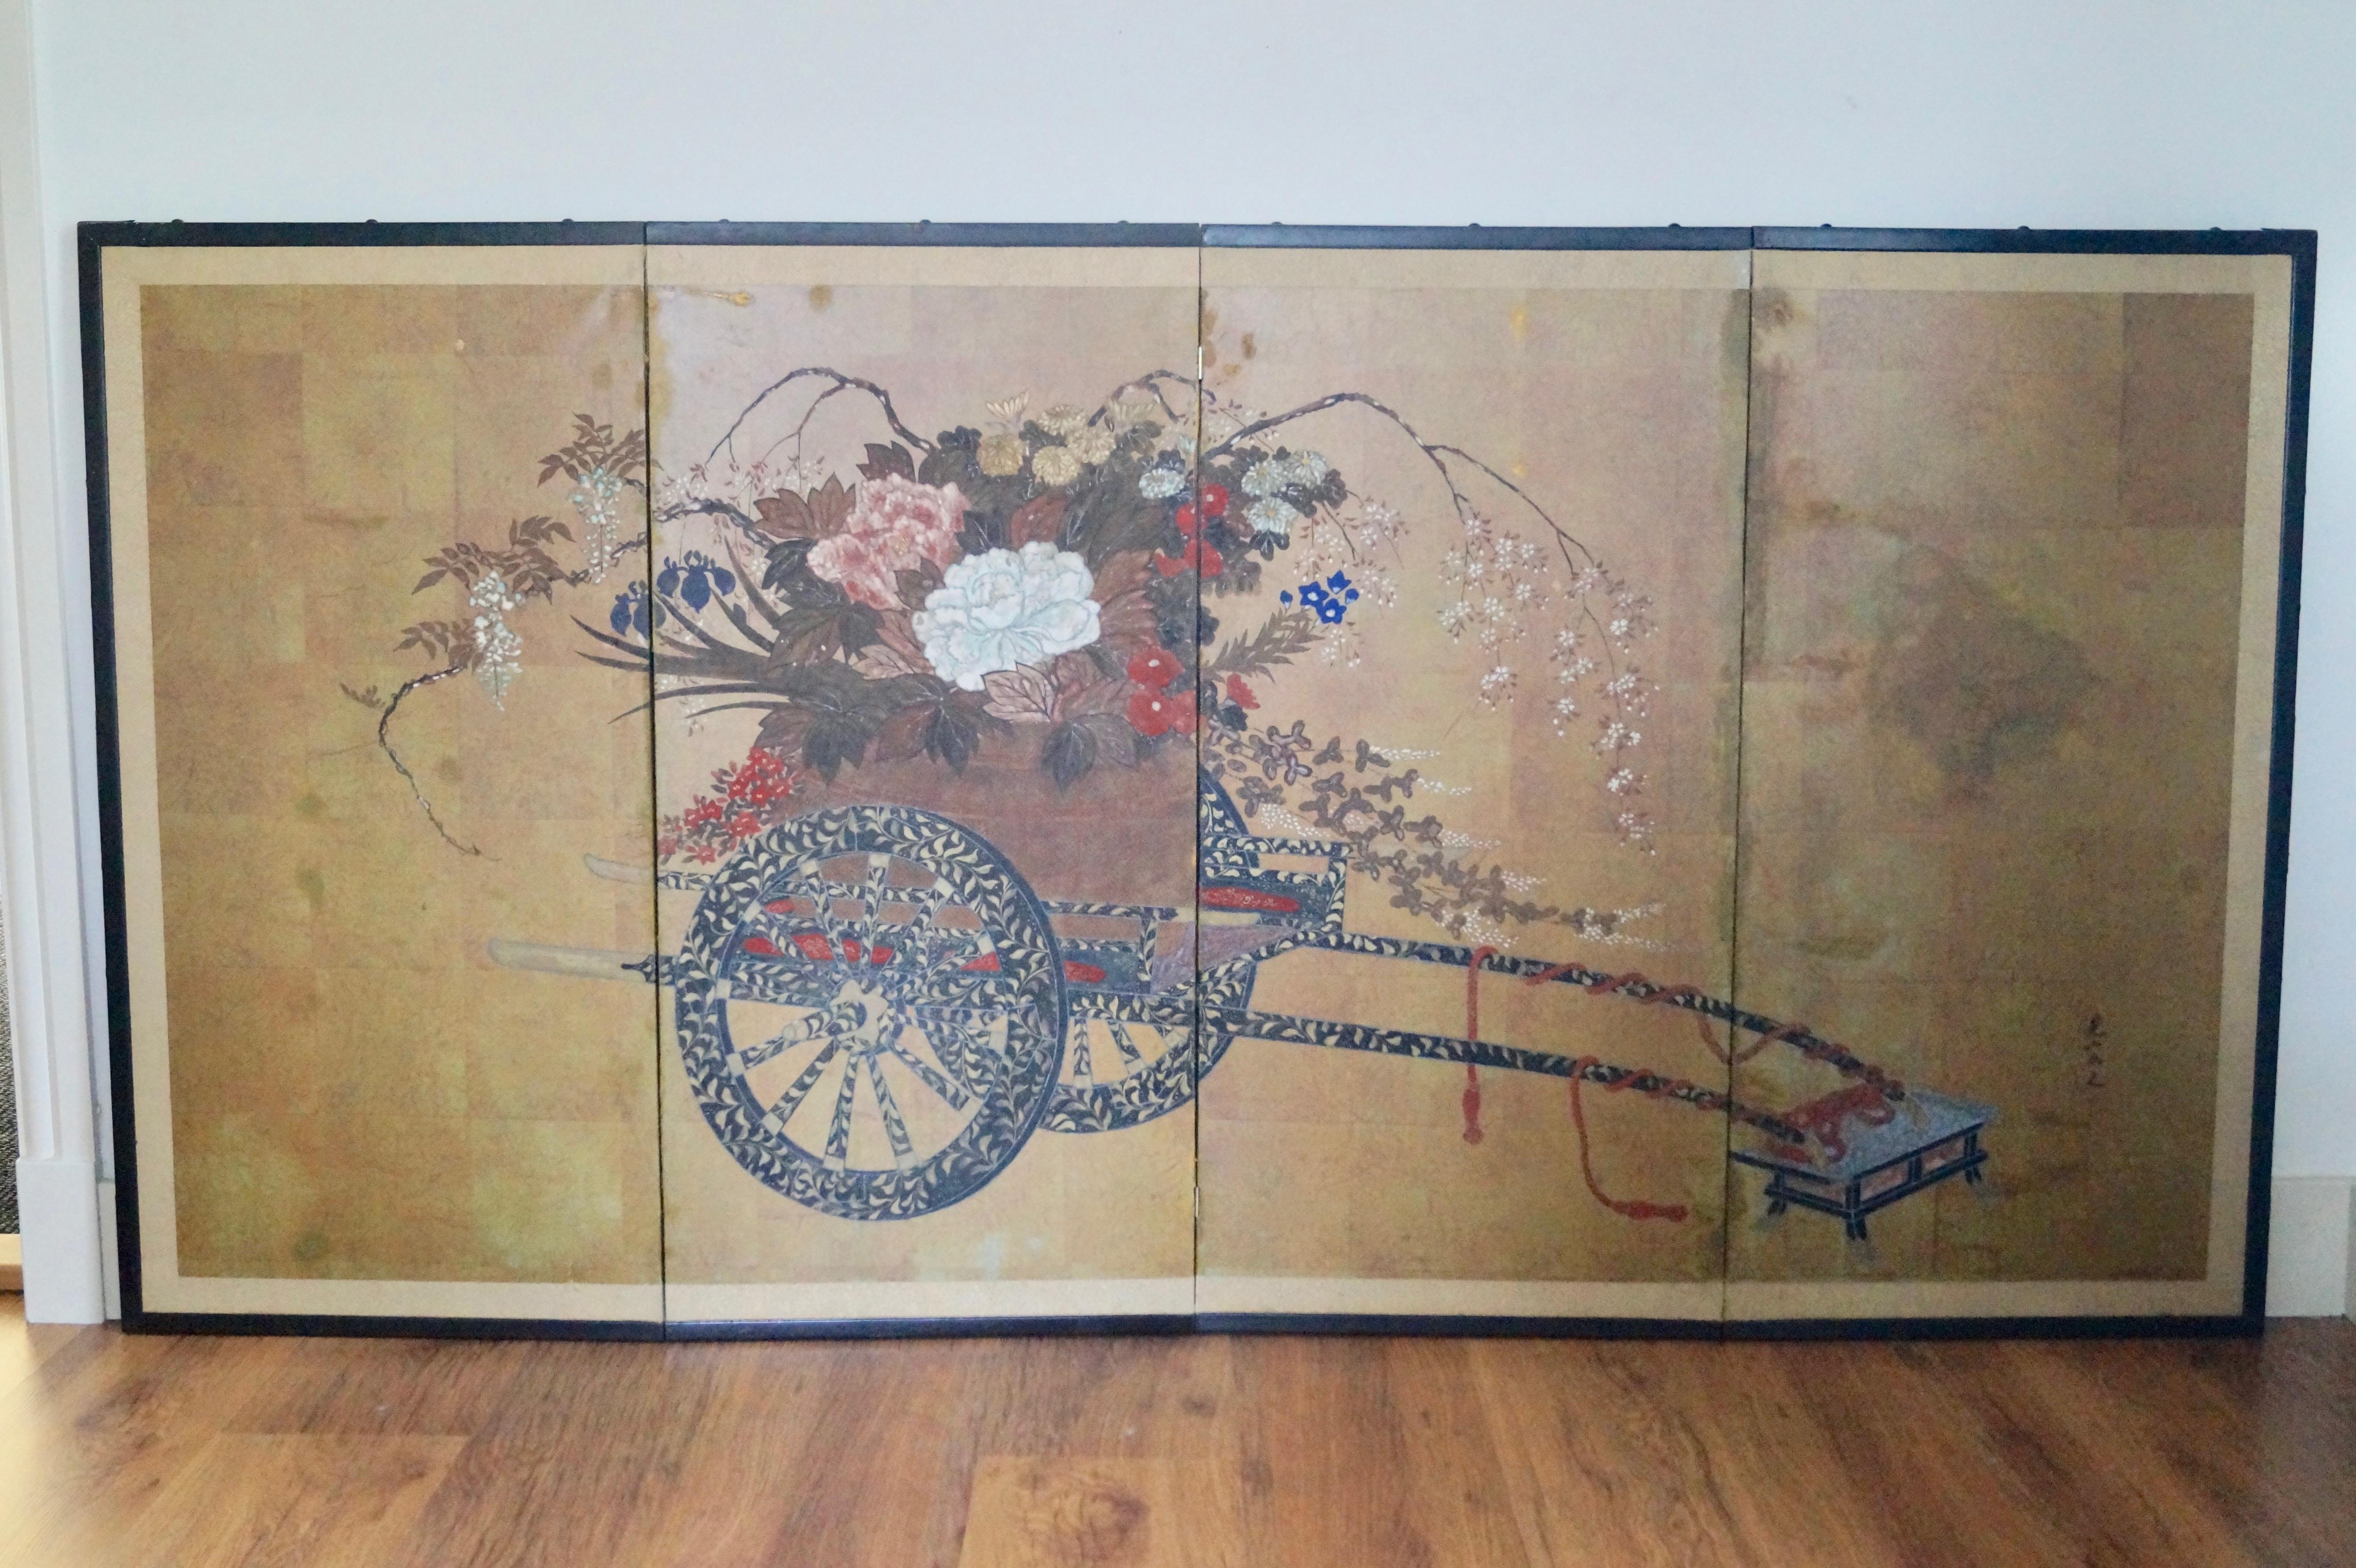 Niedriger chinesischer Faltschirm (Bayou). Alle handbemalt. Professionell. 

Kann auch als Gemälde an die Wand gehängt werden.

Handbemalt auf Blattgold.


Breite	184 cm
Tiefe	3 cm
Höhe	92 cm